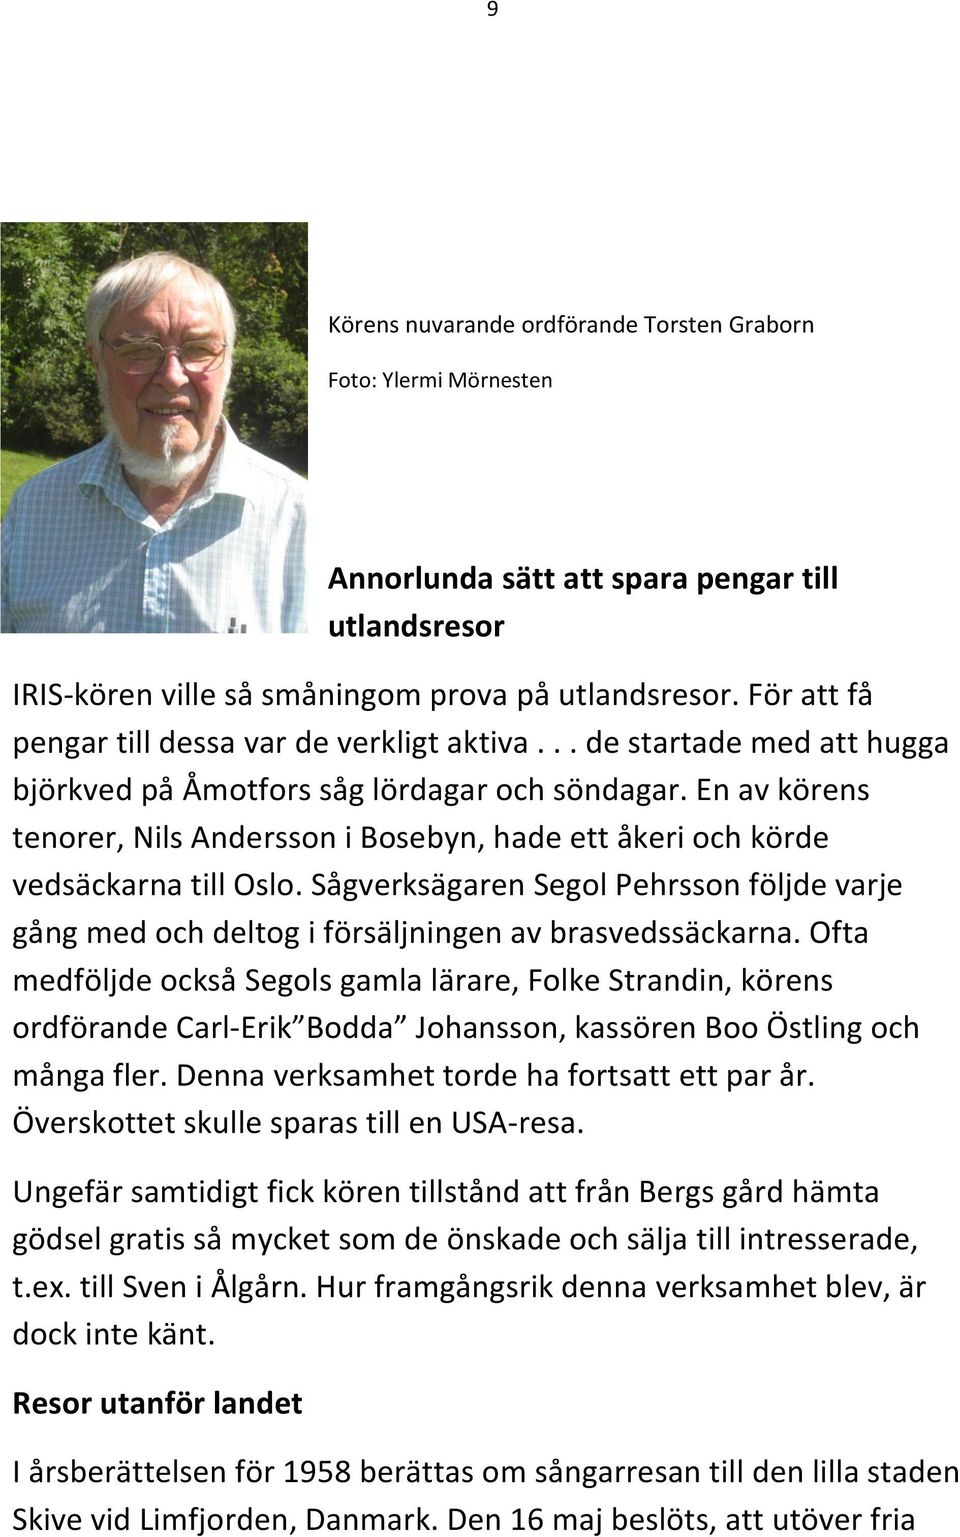 En av körens tenorer, Nils Andersson i Bosebyn, hade ett åkeri och körde vedsäckarna till Oslo. Sågverksägaren Segol Pehrsson följde varje gång med och deltog i försäljningen av brasvedssäckarna.